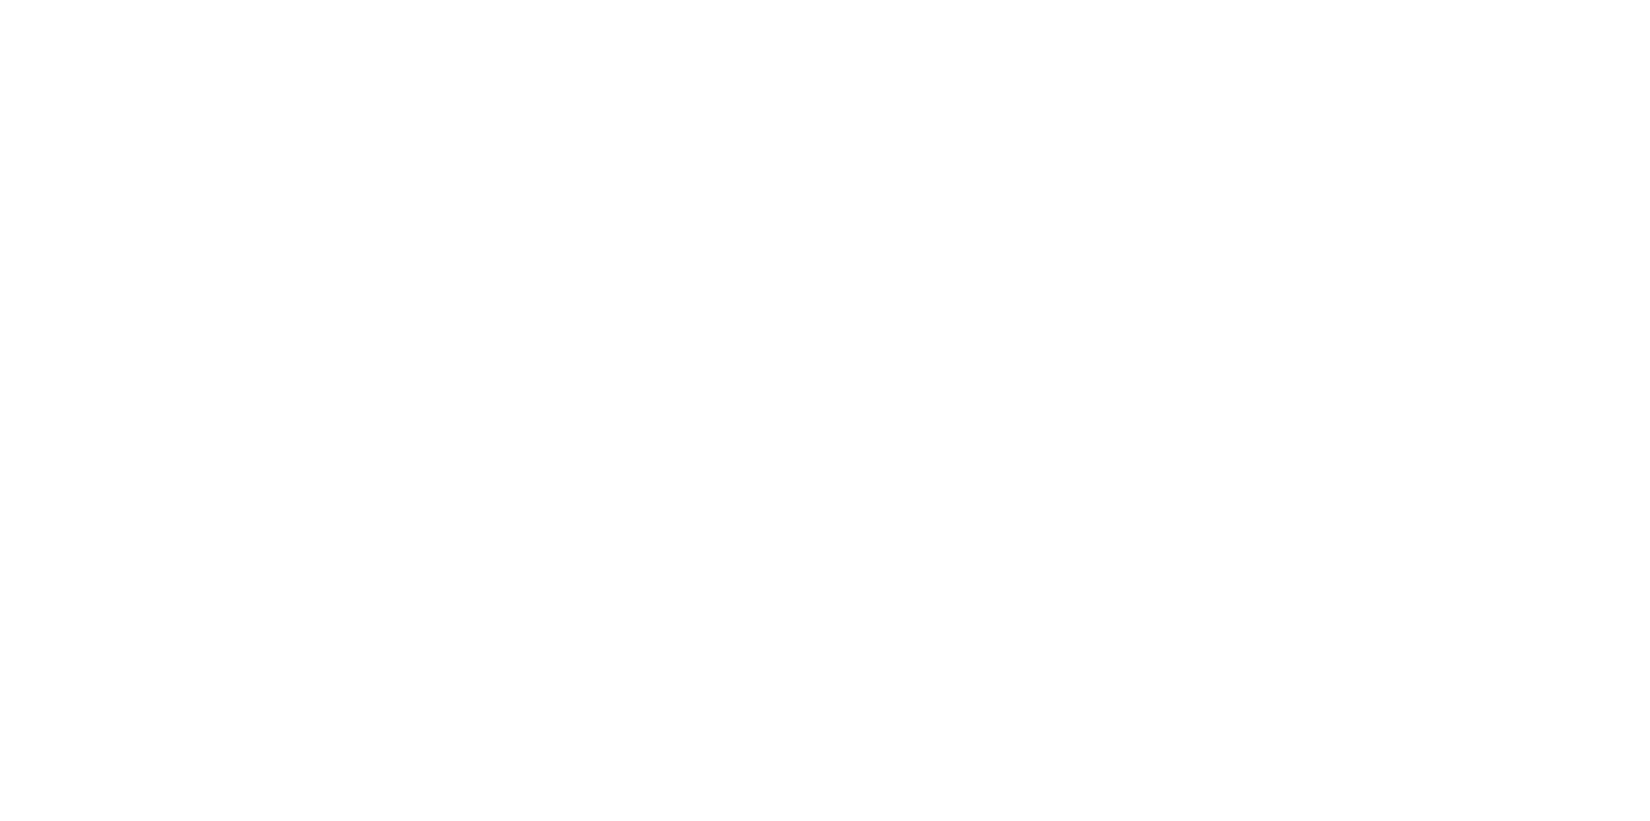 pakalolo supply co